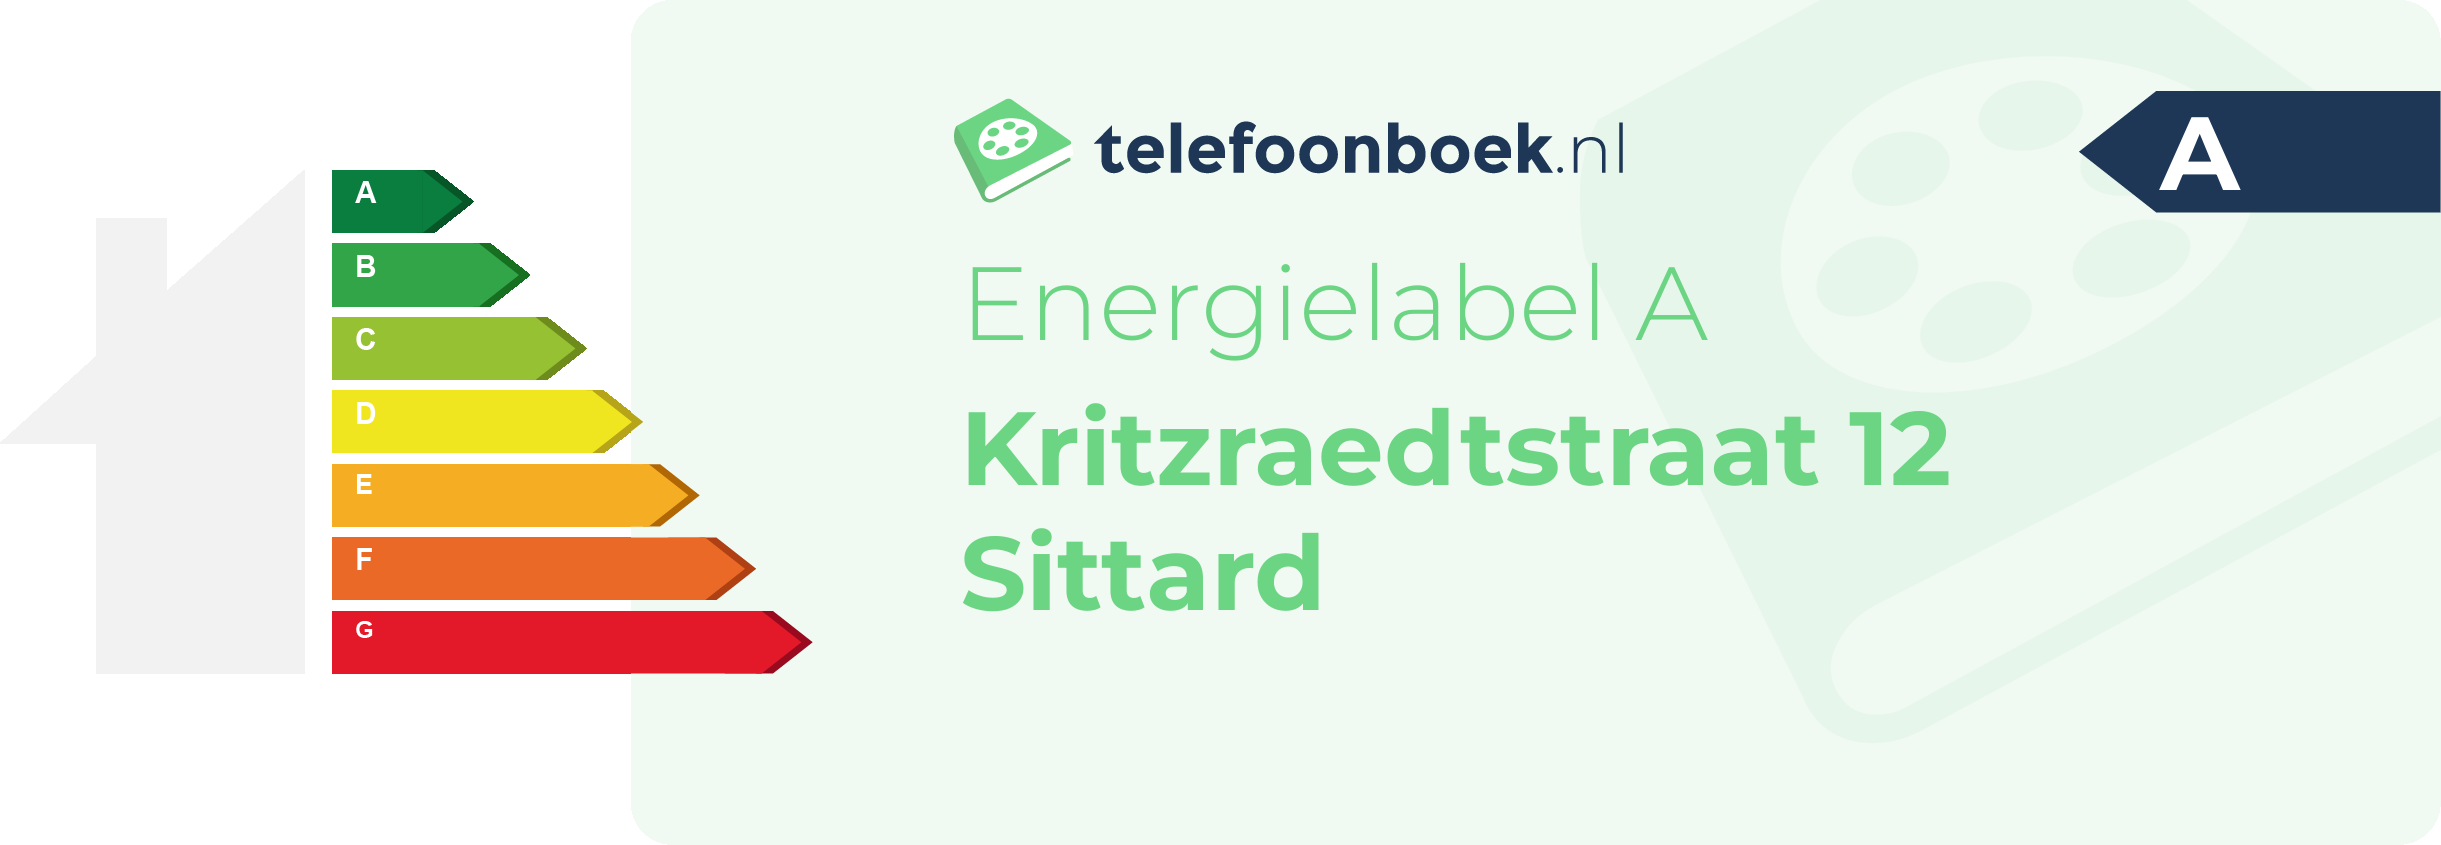 Energielabel Kritzraedtstraat 12 Sittard